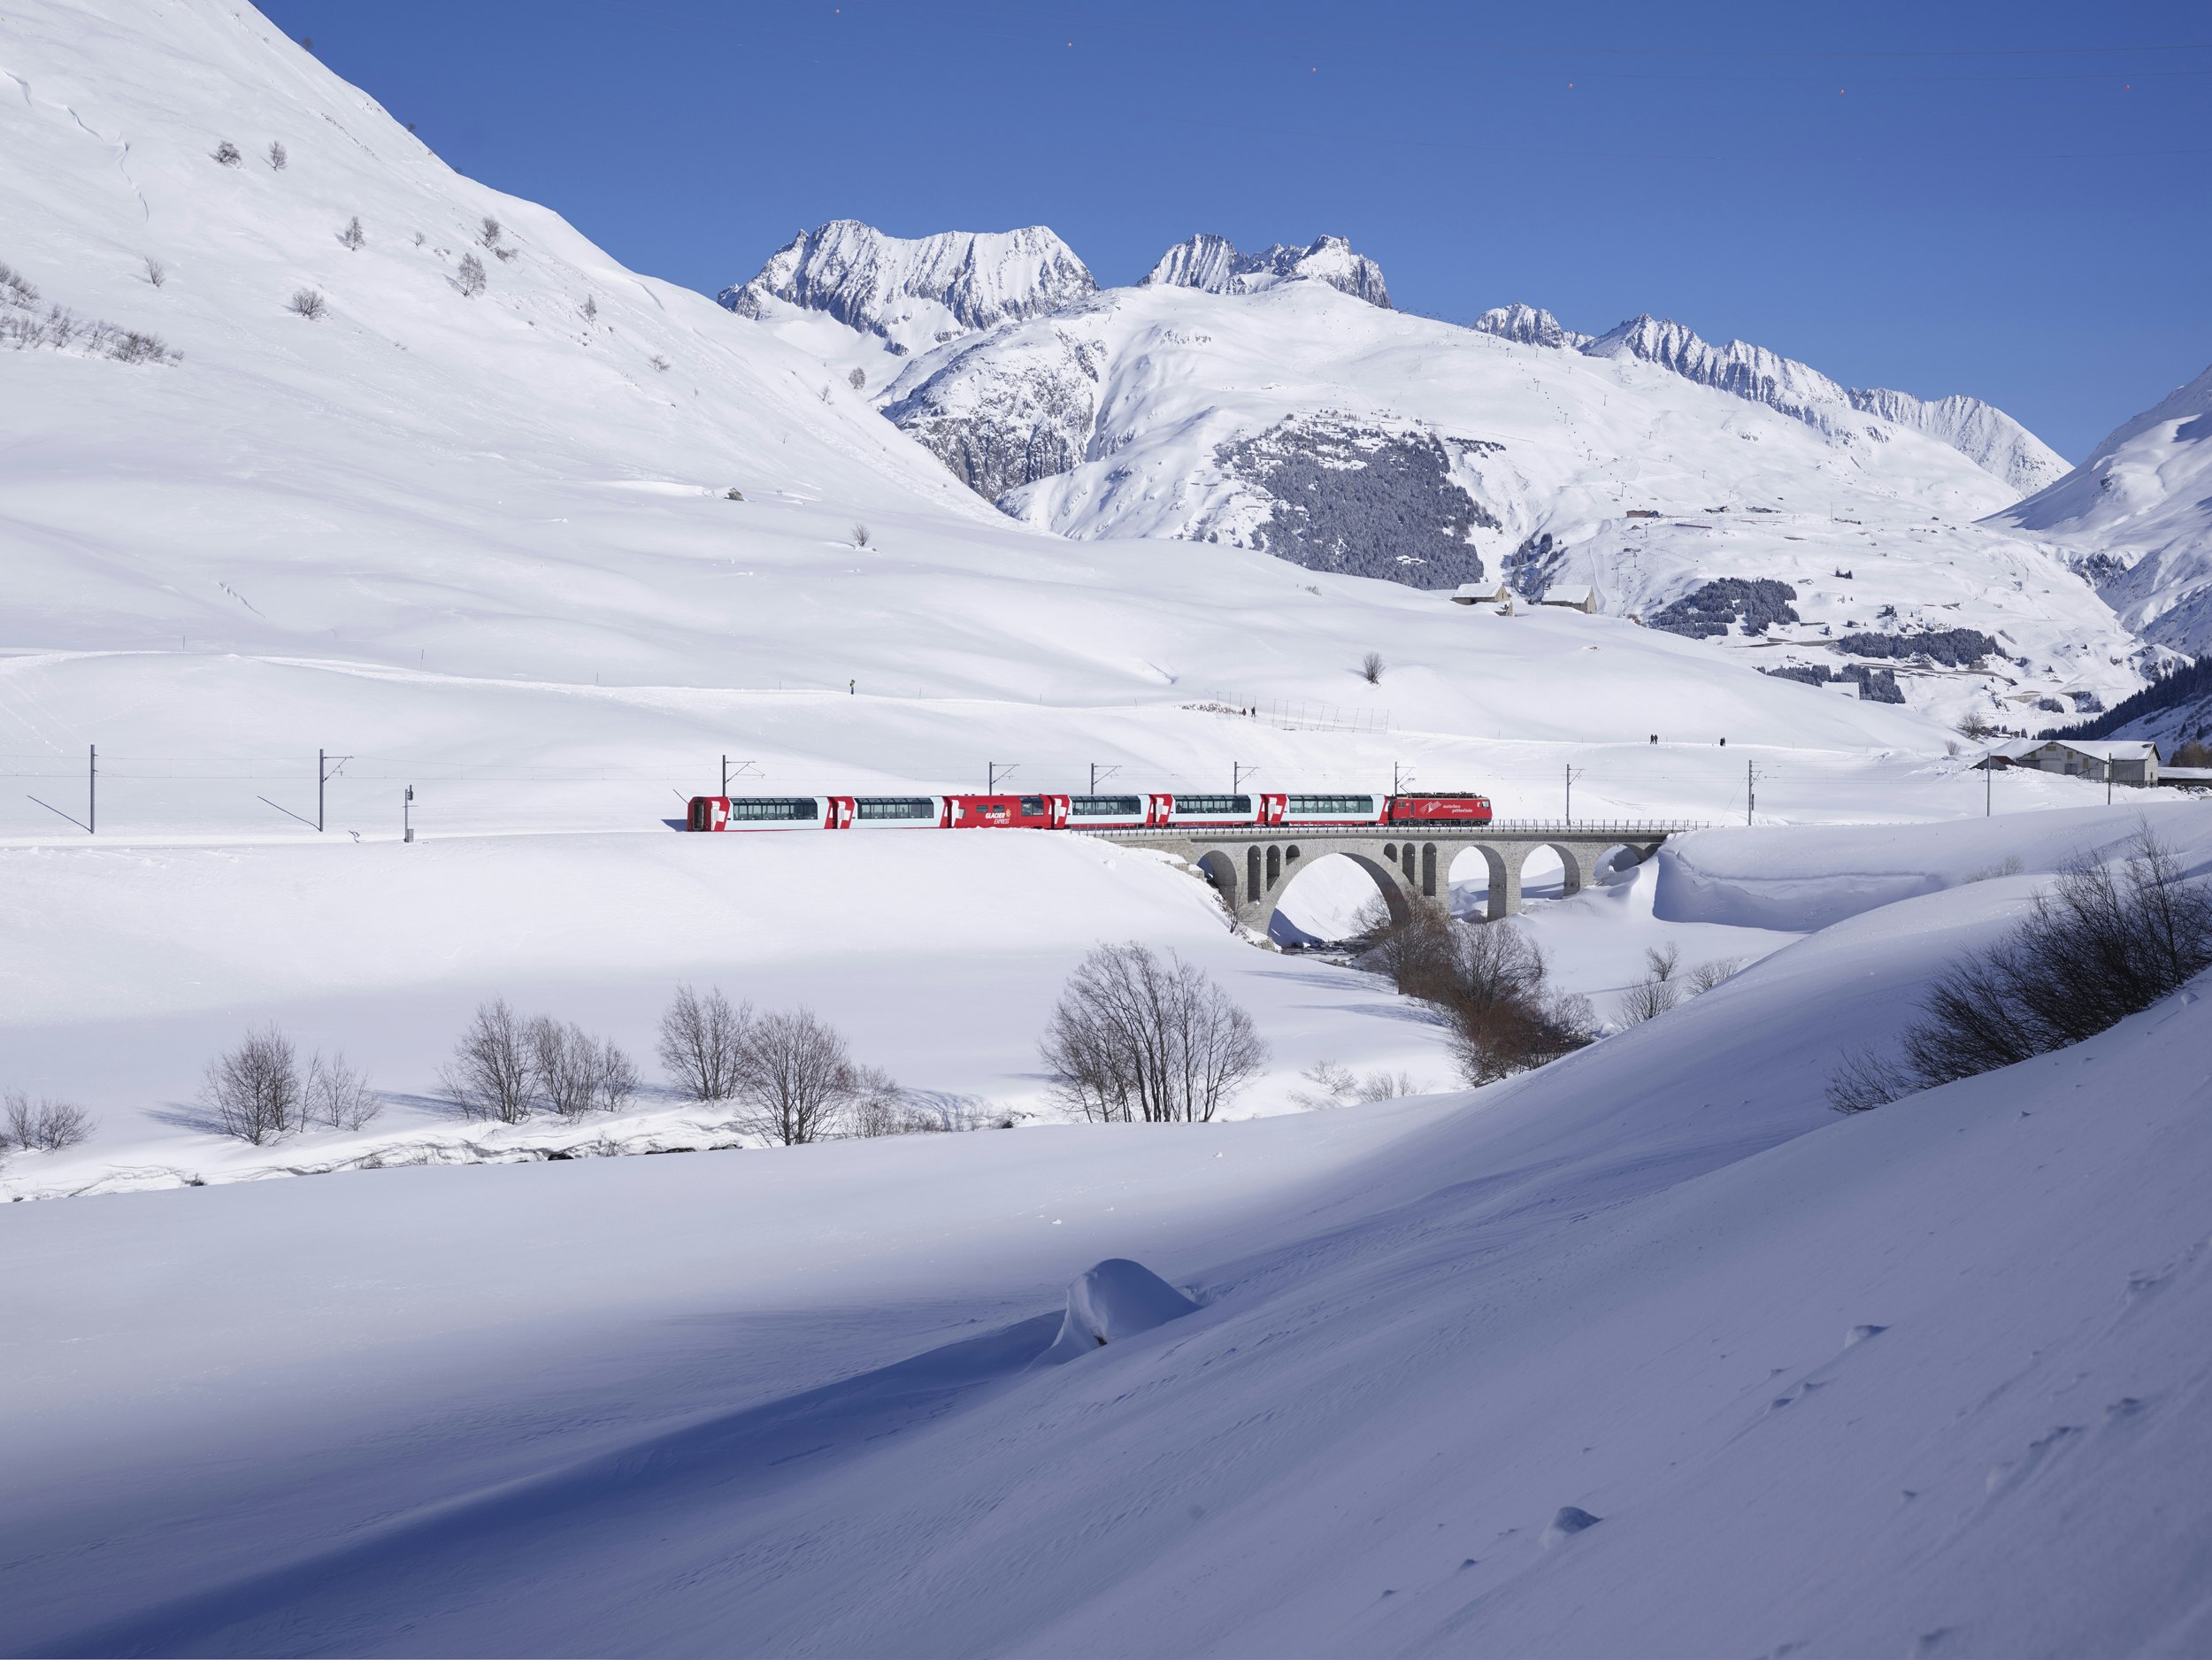 Glacier Express voyage court<br>2 jours / 1 nuit<br>dès CHF 775.- pour 2 personnes